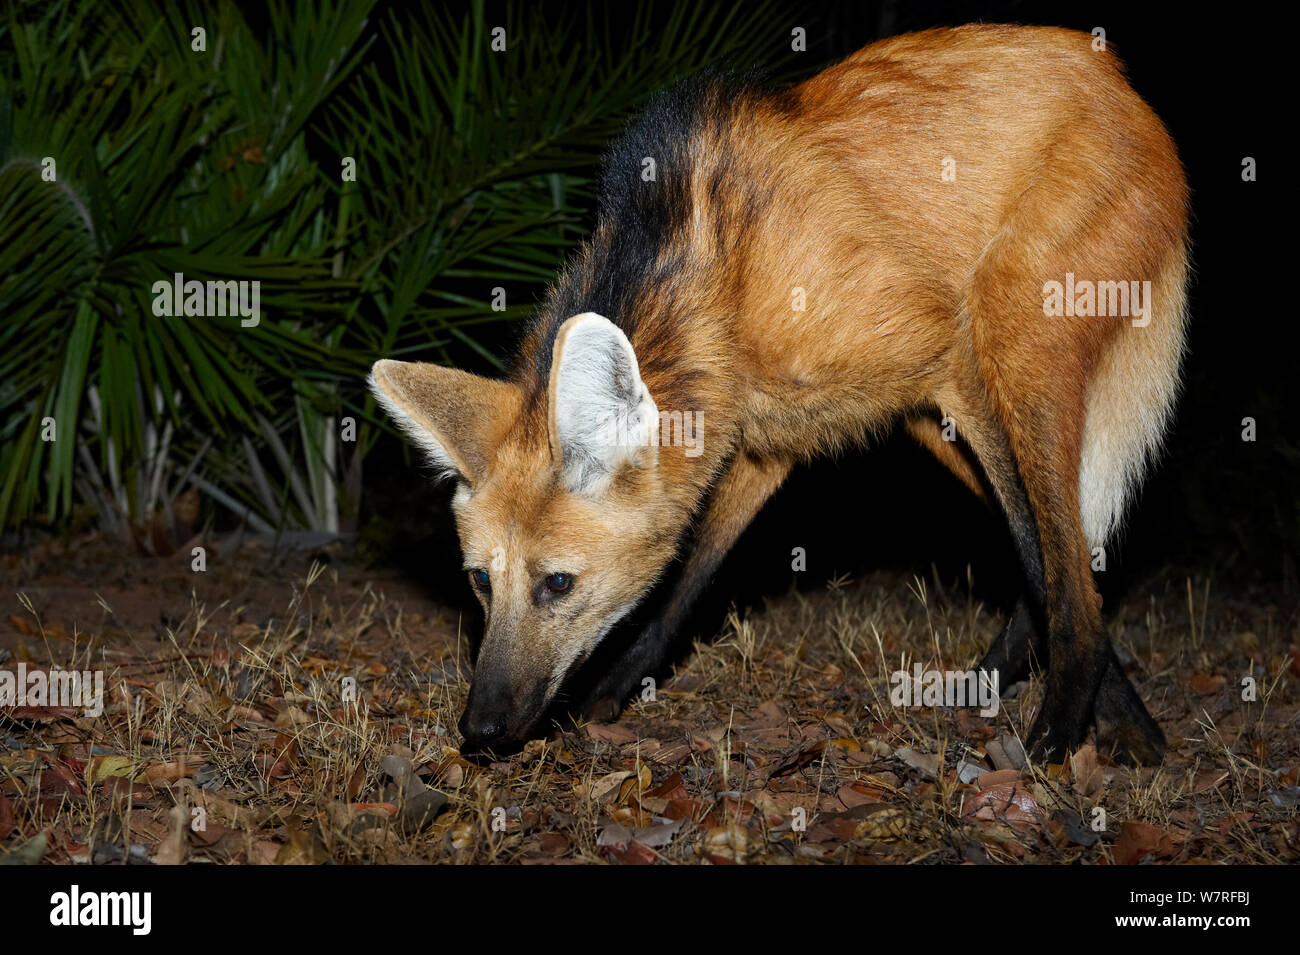 Lobo de crin (Chrysocyon brachyurus) buscando comida, Piauí, Cerrado, Brasil, América del Sur Foto de stock